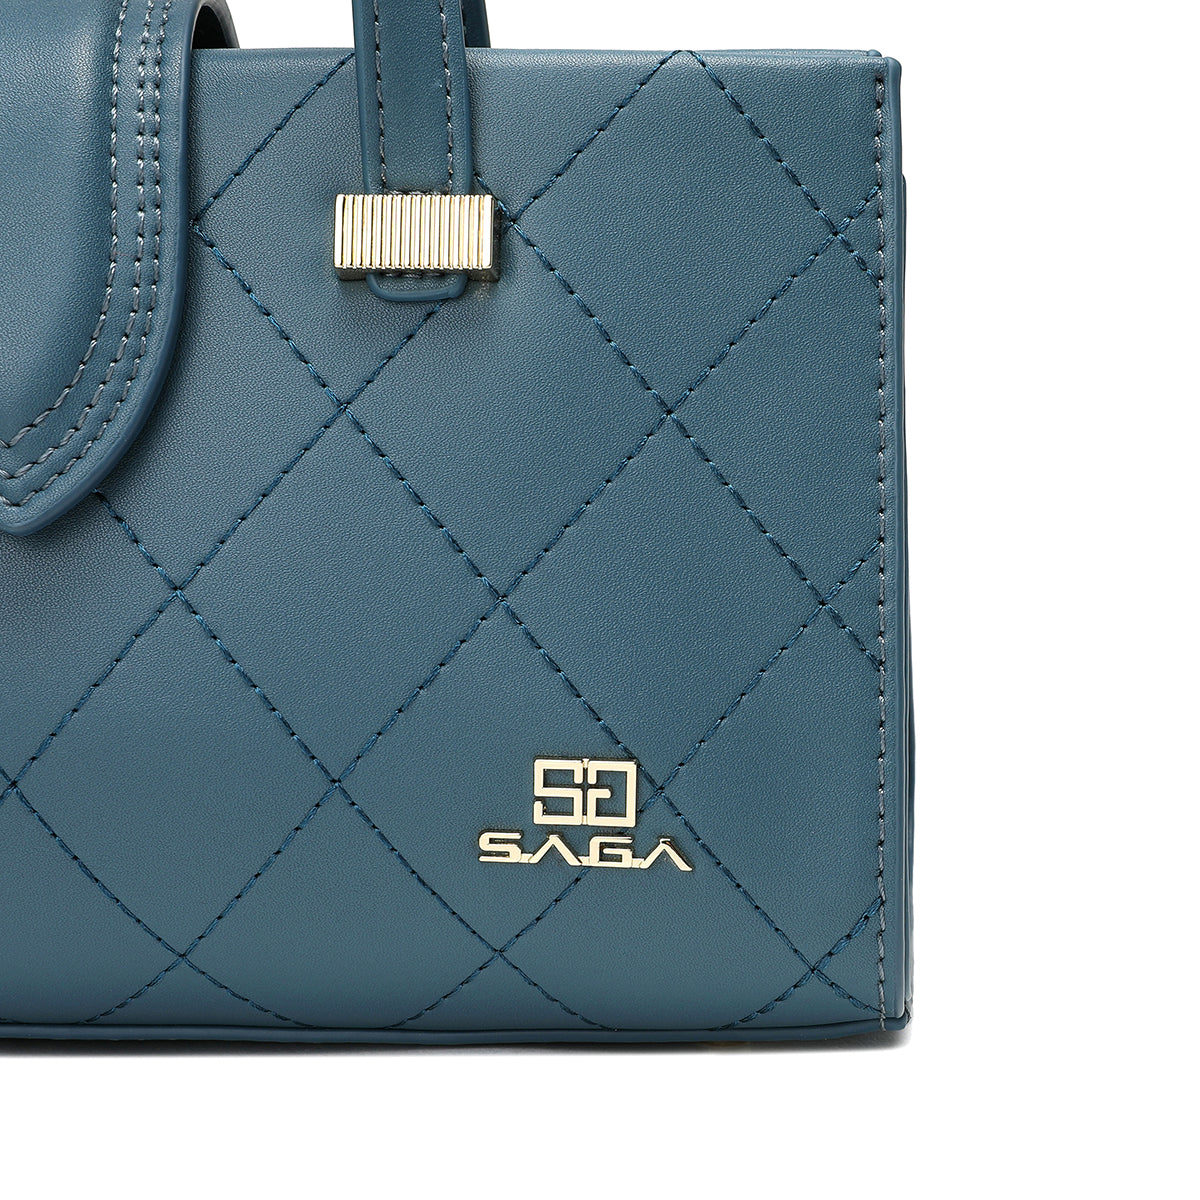 تفاصيل جانبية لحقيبة يد ساغا باللون الأزرق الفاتح مع شعار الماركة المعدني."